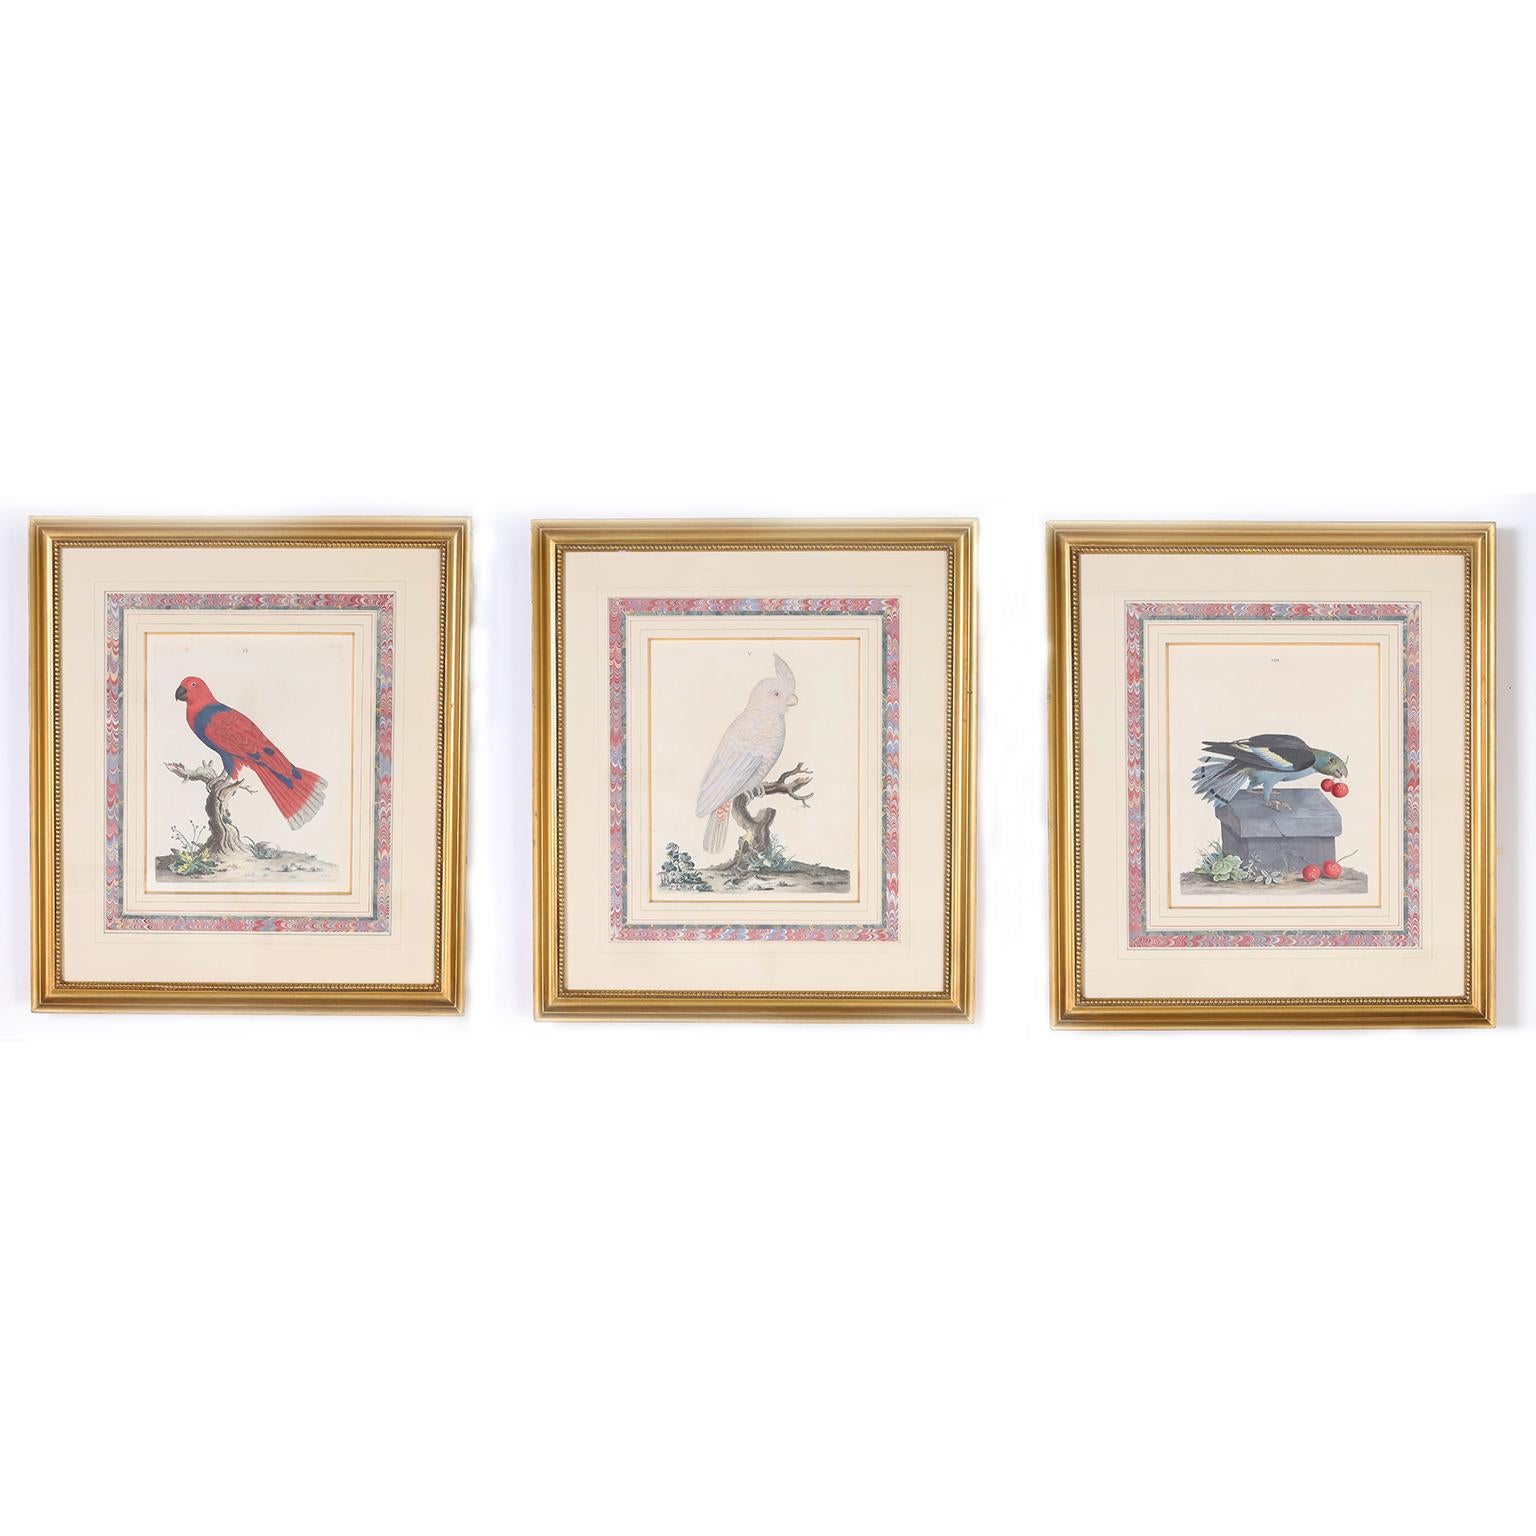 Peter Brown Animal Print – Drei antike handkolorierte Gravuren von Vögeln